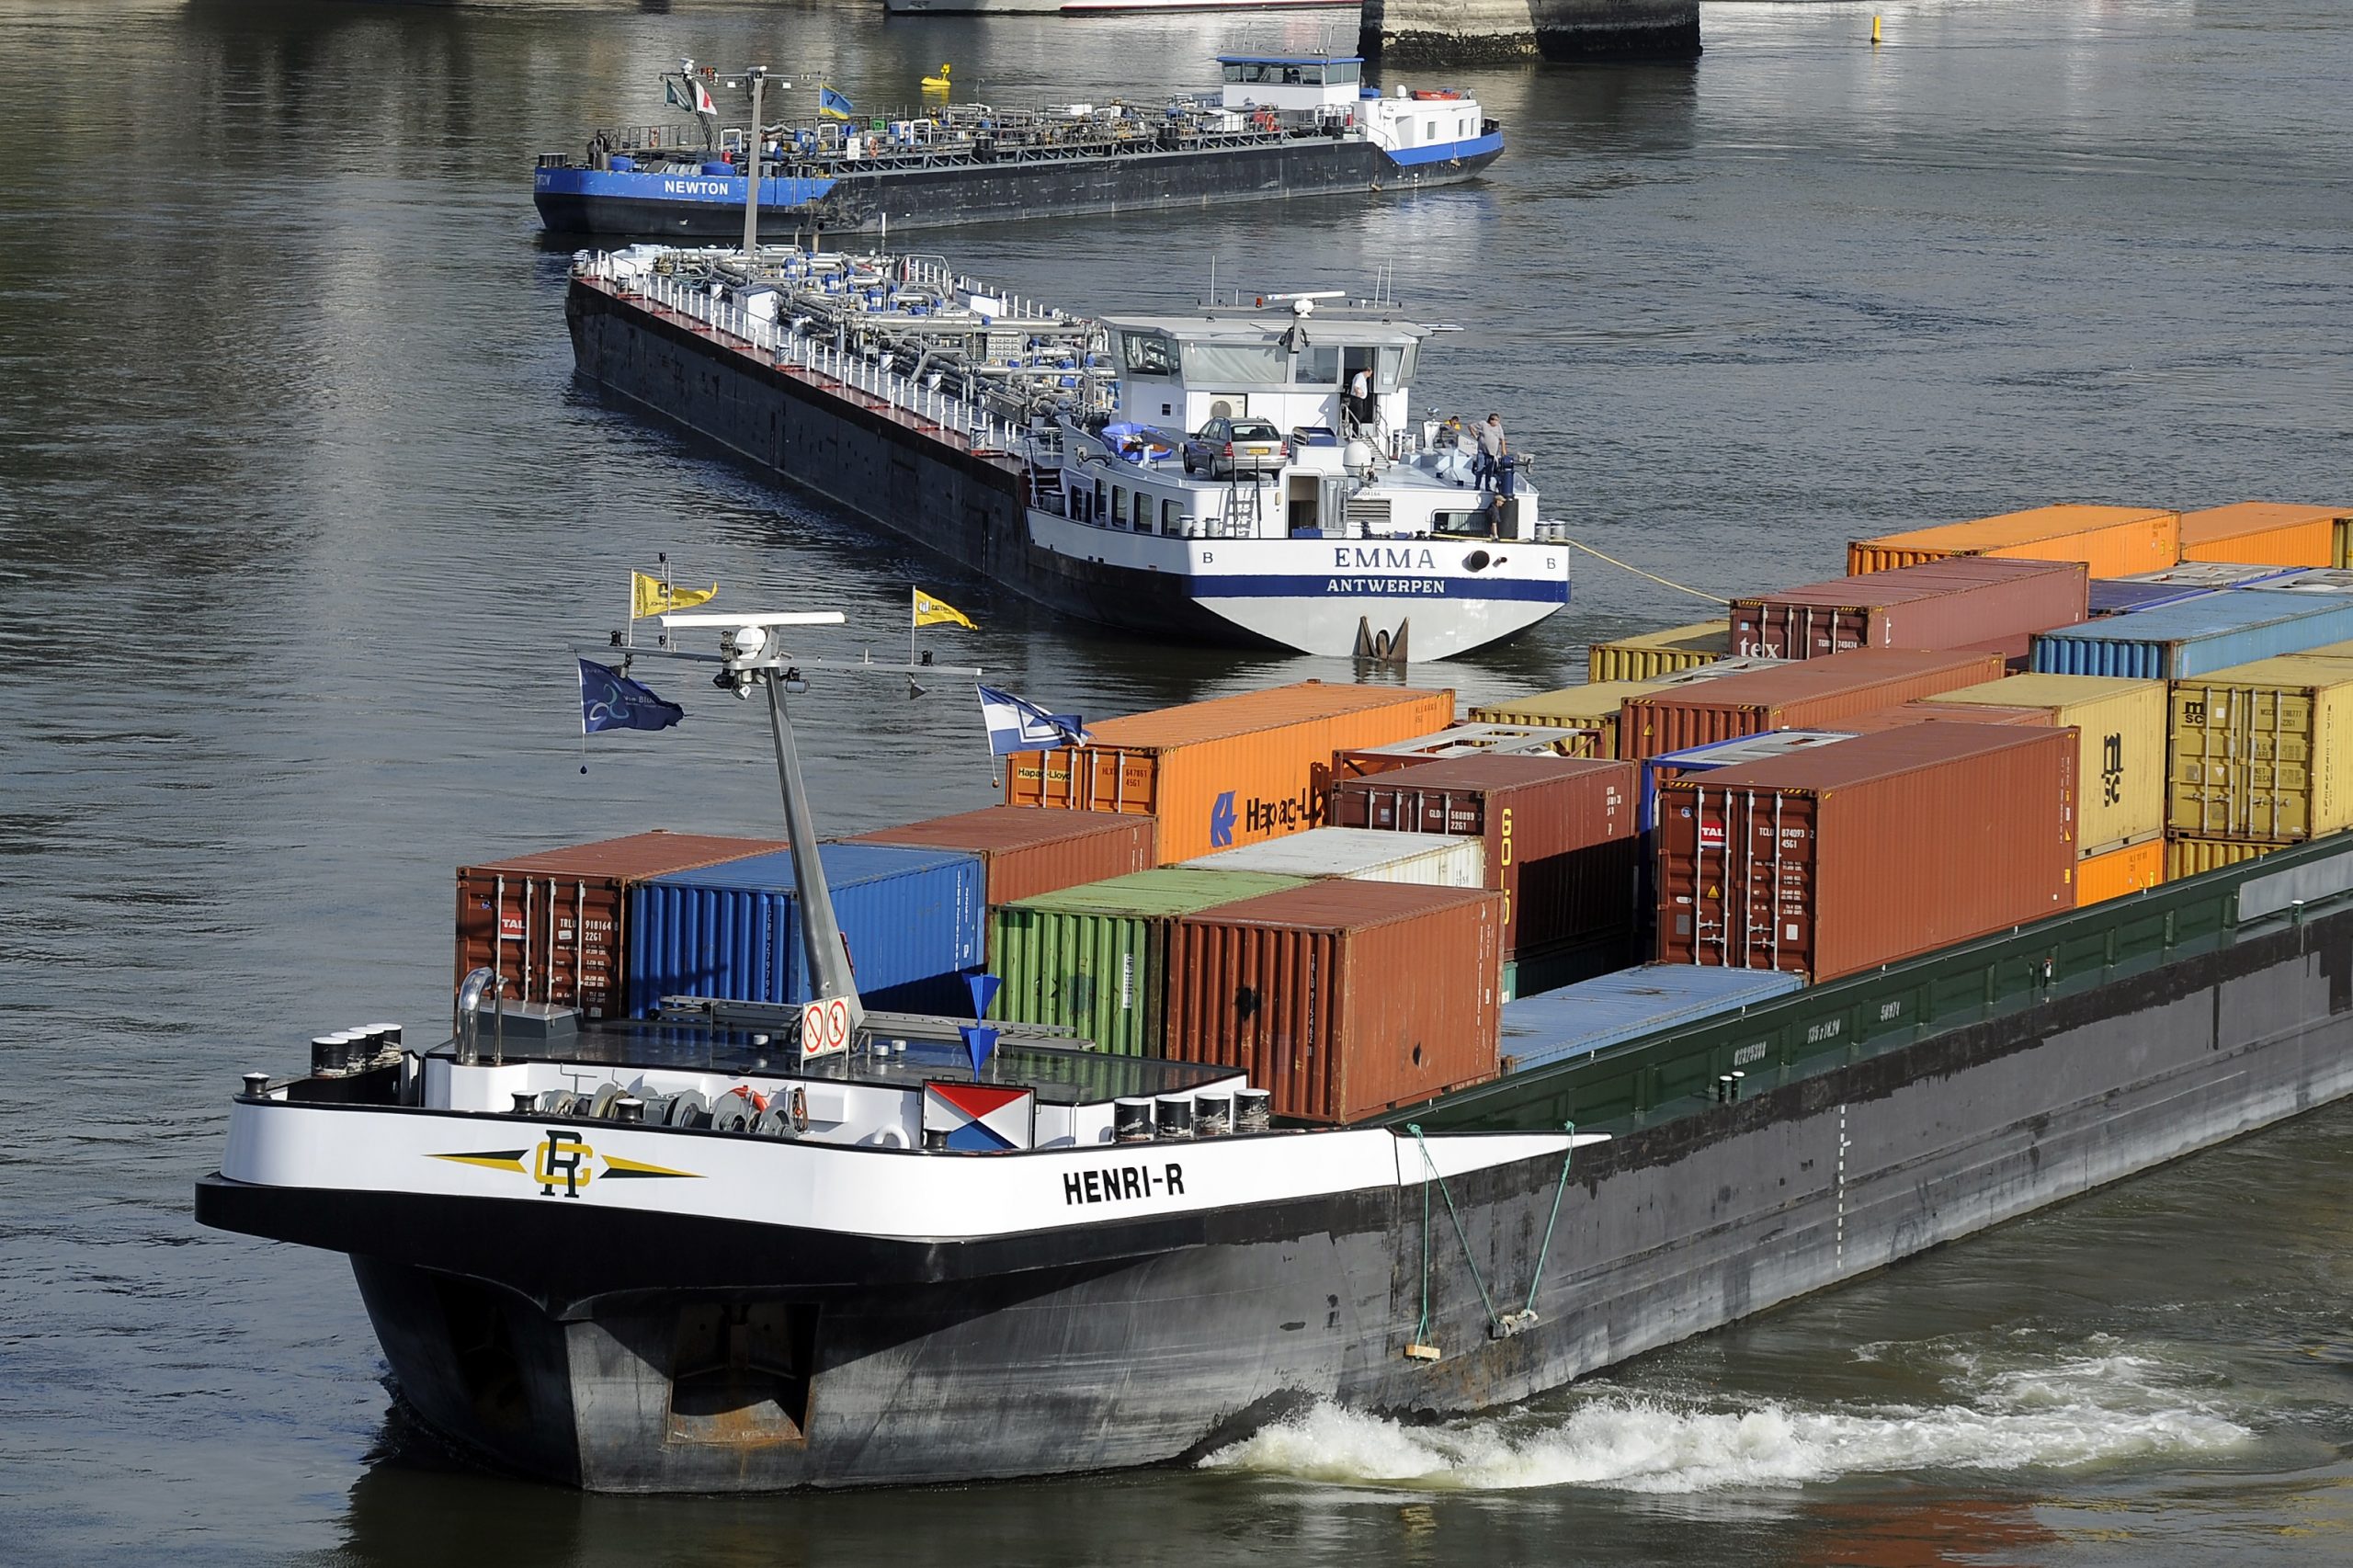 Bên cạnh tàu biển, sà lan cũng là một phương tiện đường thủy được sử dụng rộng rãi để vận chuyển container